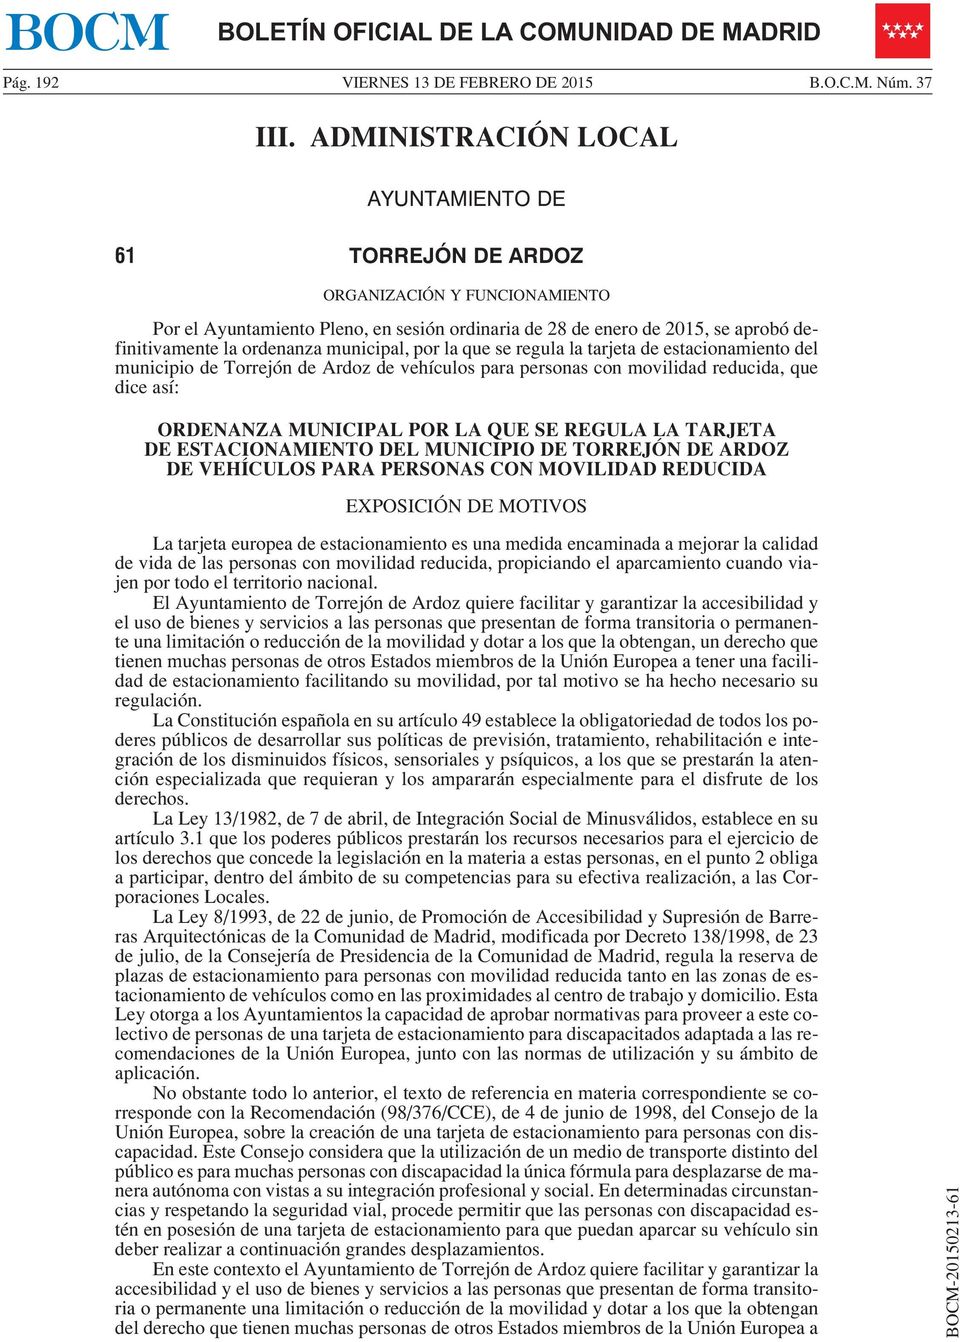 municipal, por la que se regula la tarjeta de estacionamiento del municipio de Torrejón de Ardoz de vehículos para personas con movilidad reducida, que dice así: ORDENANZA MUNICIPAL POR LA QUE SE